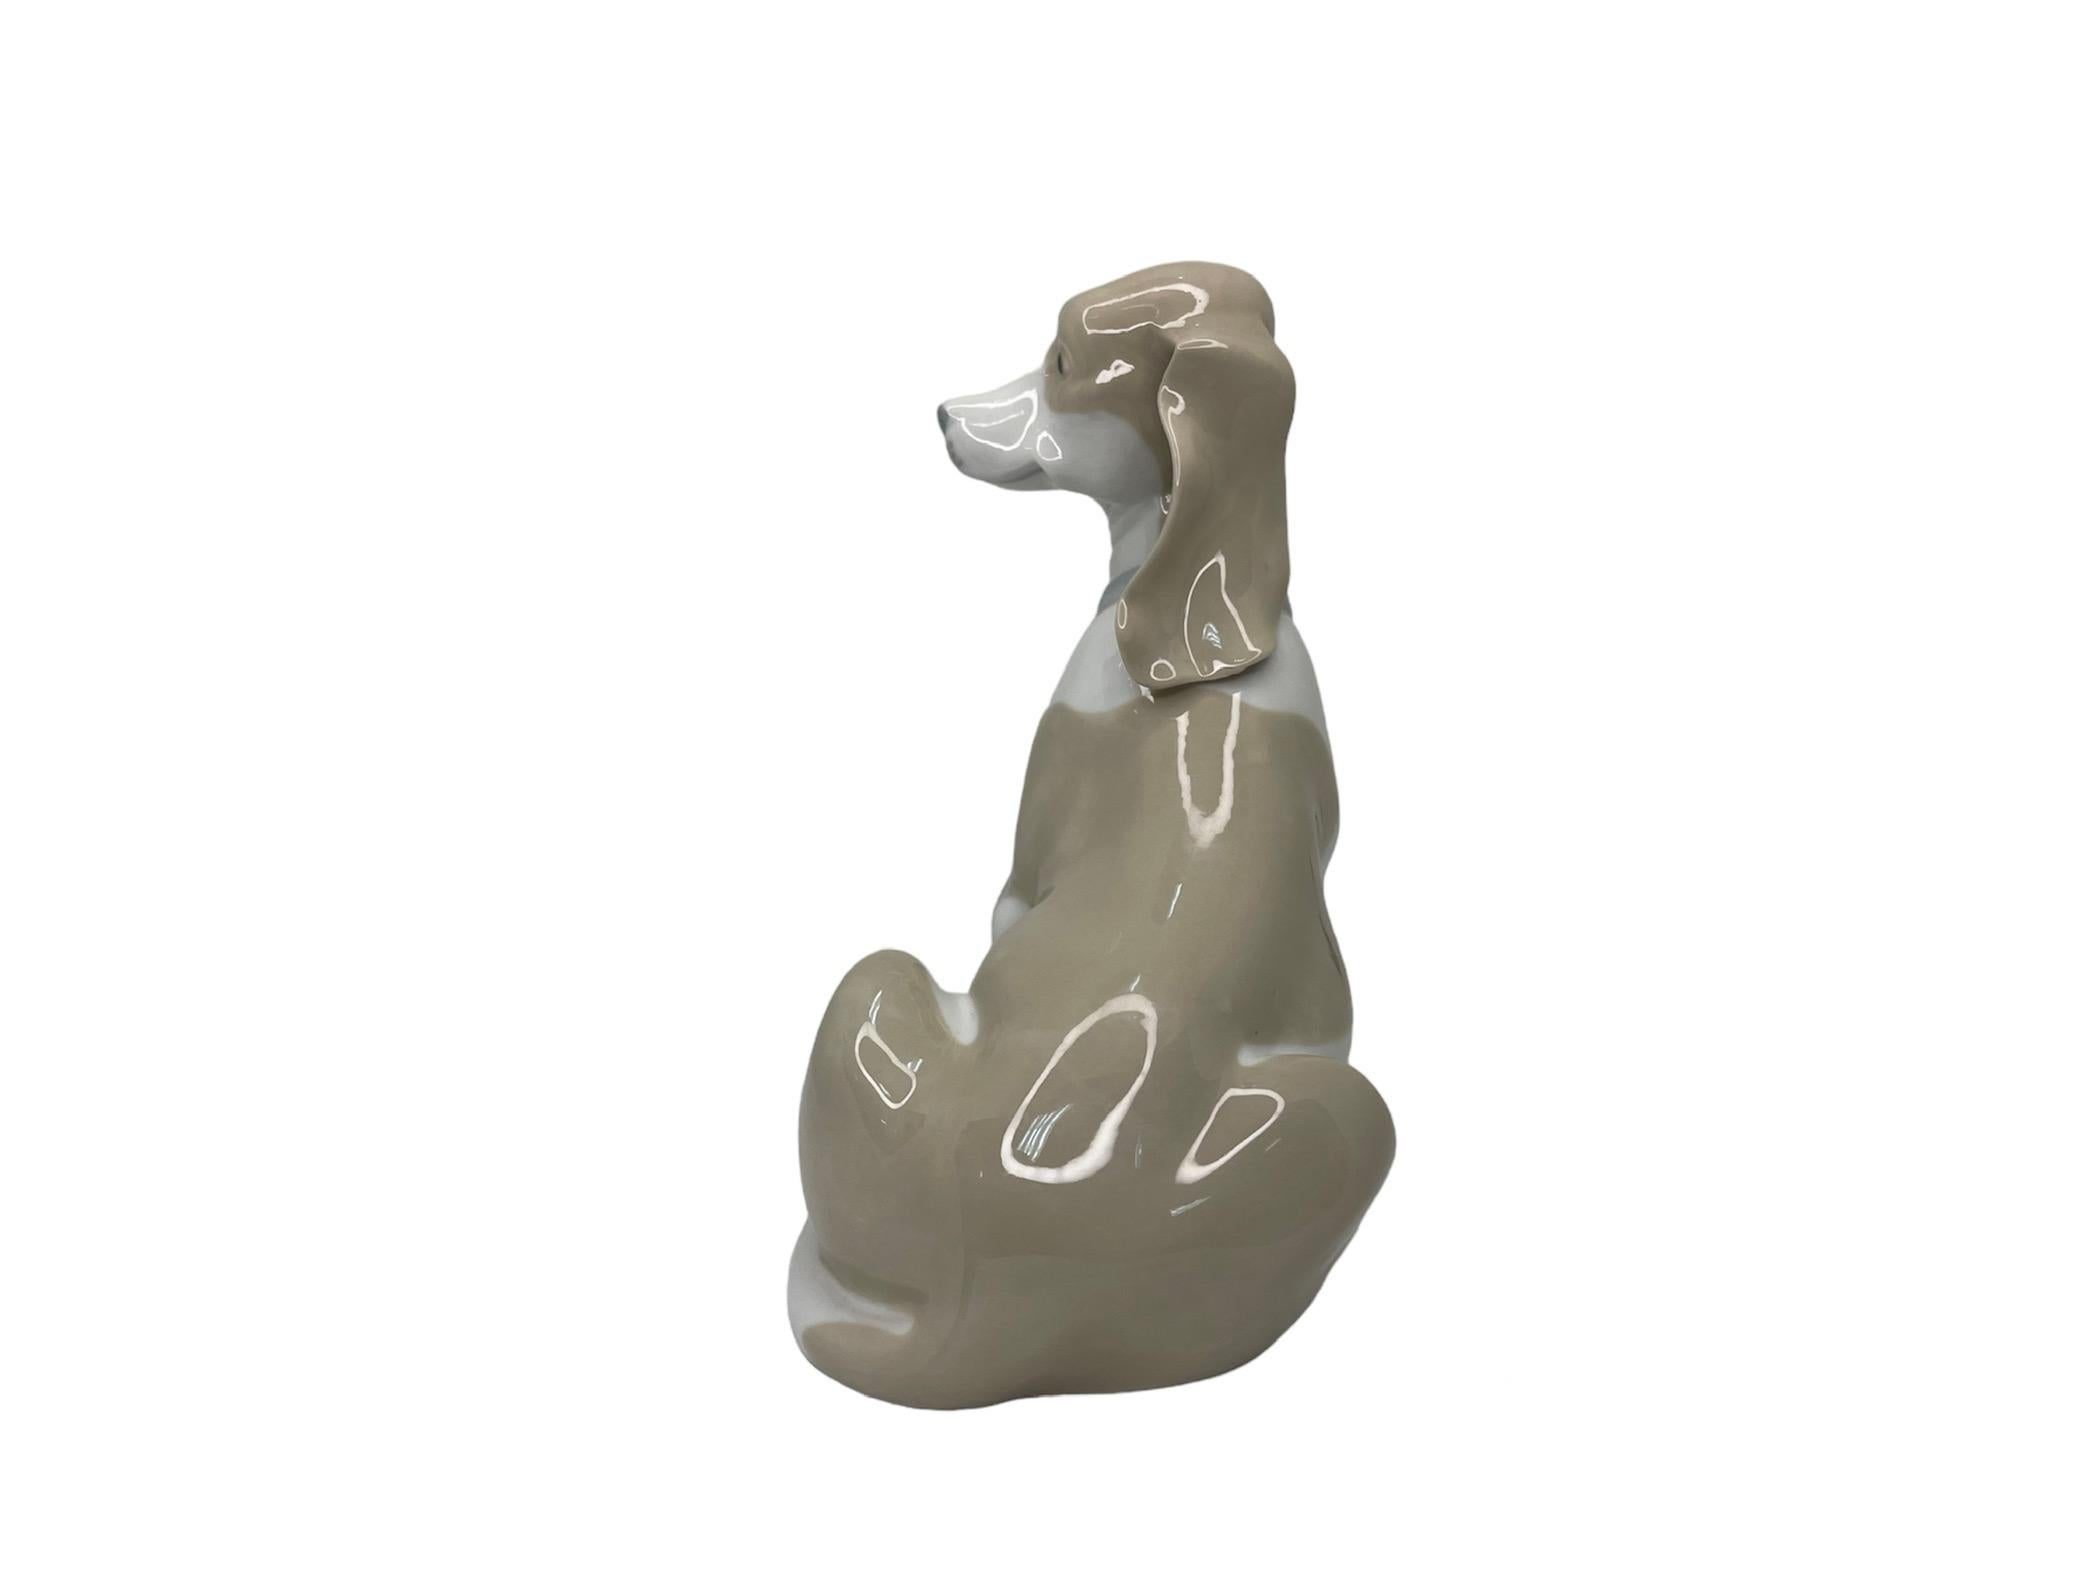 Molded Rex Valencia Porcelain Figurine Of A Hummelwerk Dog For Sale